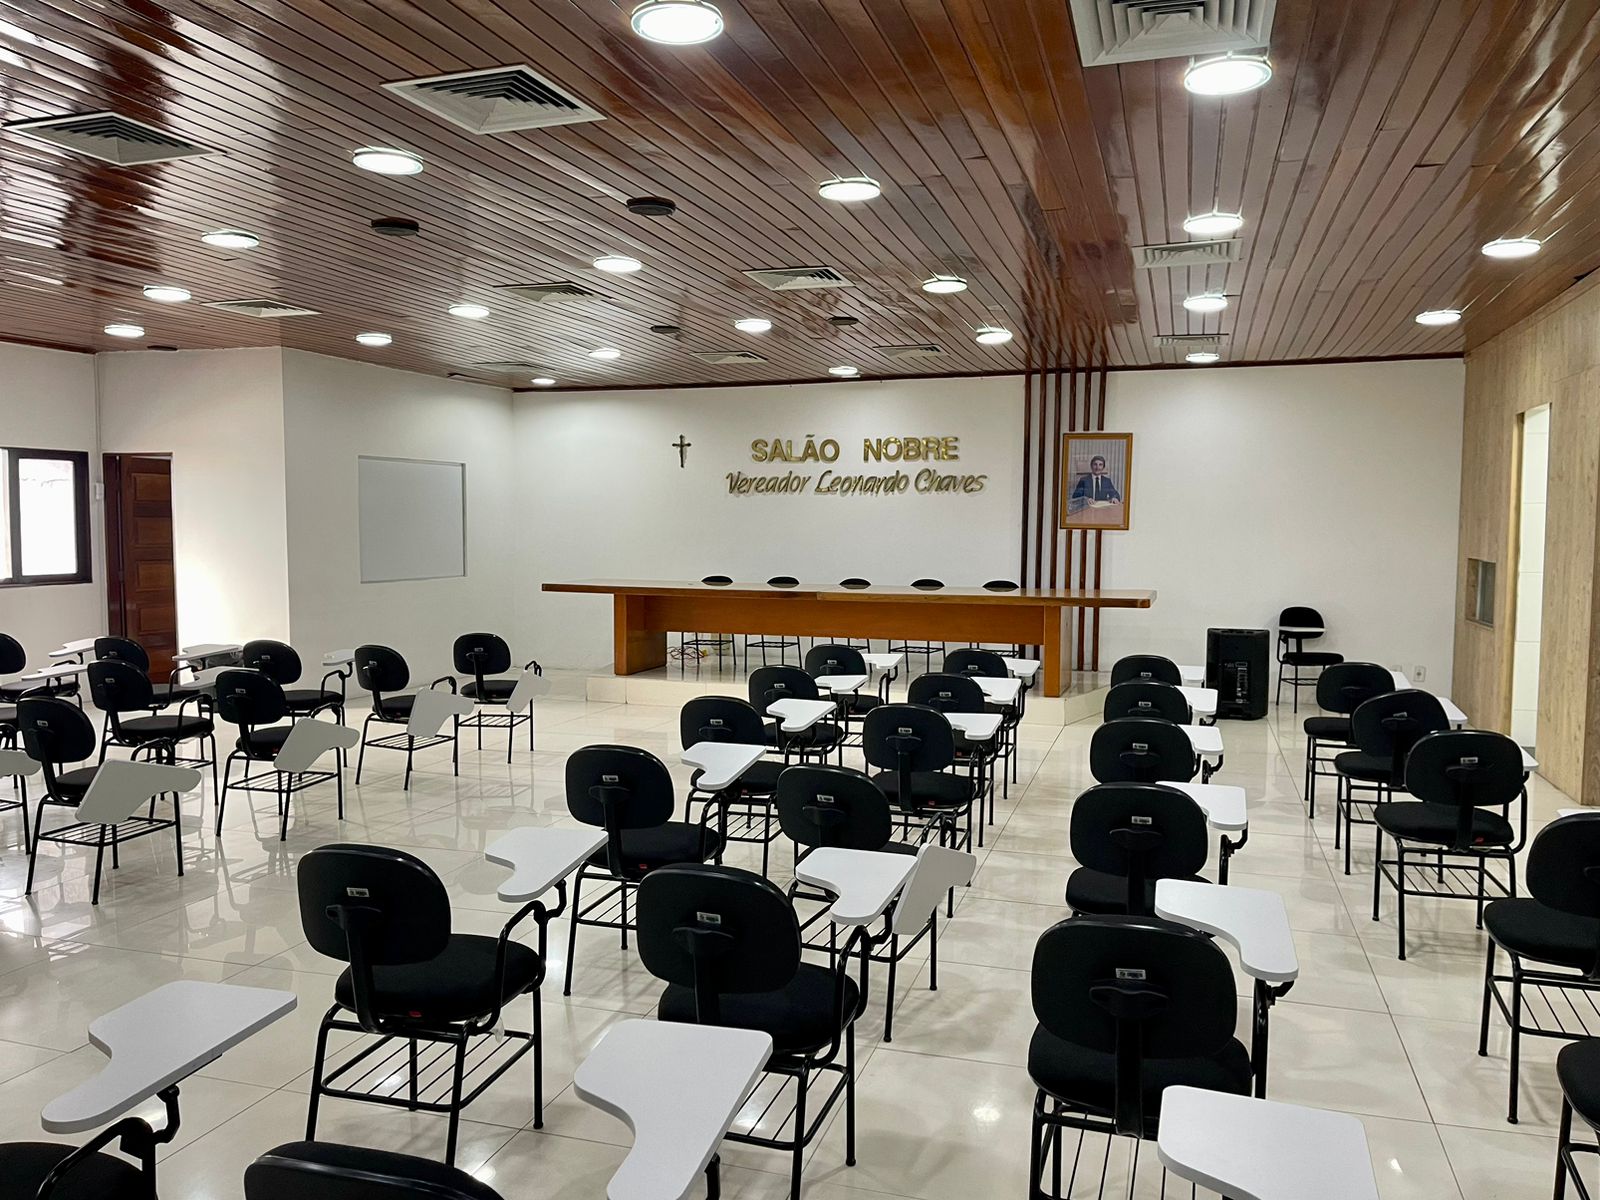 PP Caruaru promove curso de capacitação para pré-candidatos a vereador nesta sexta (19)